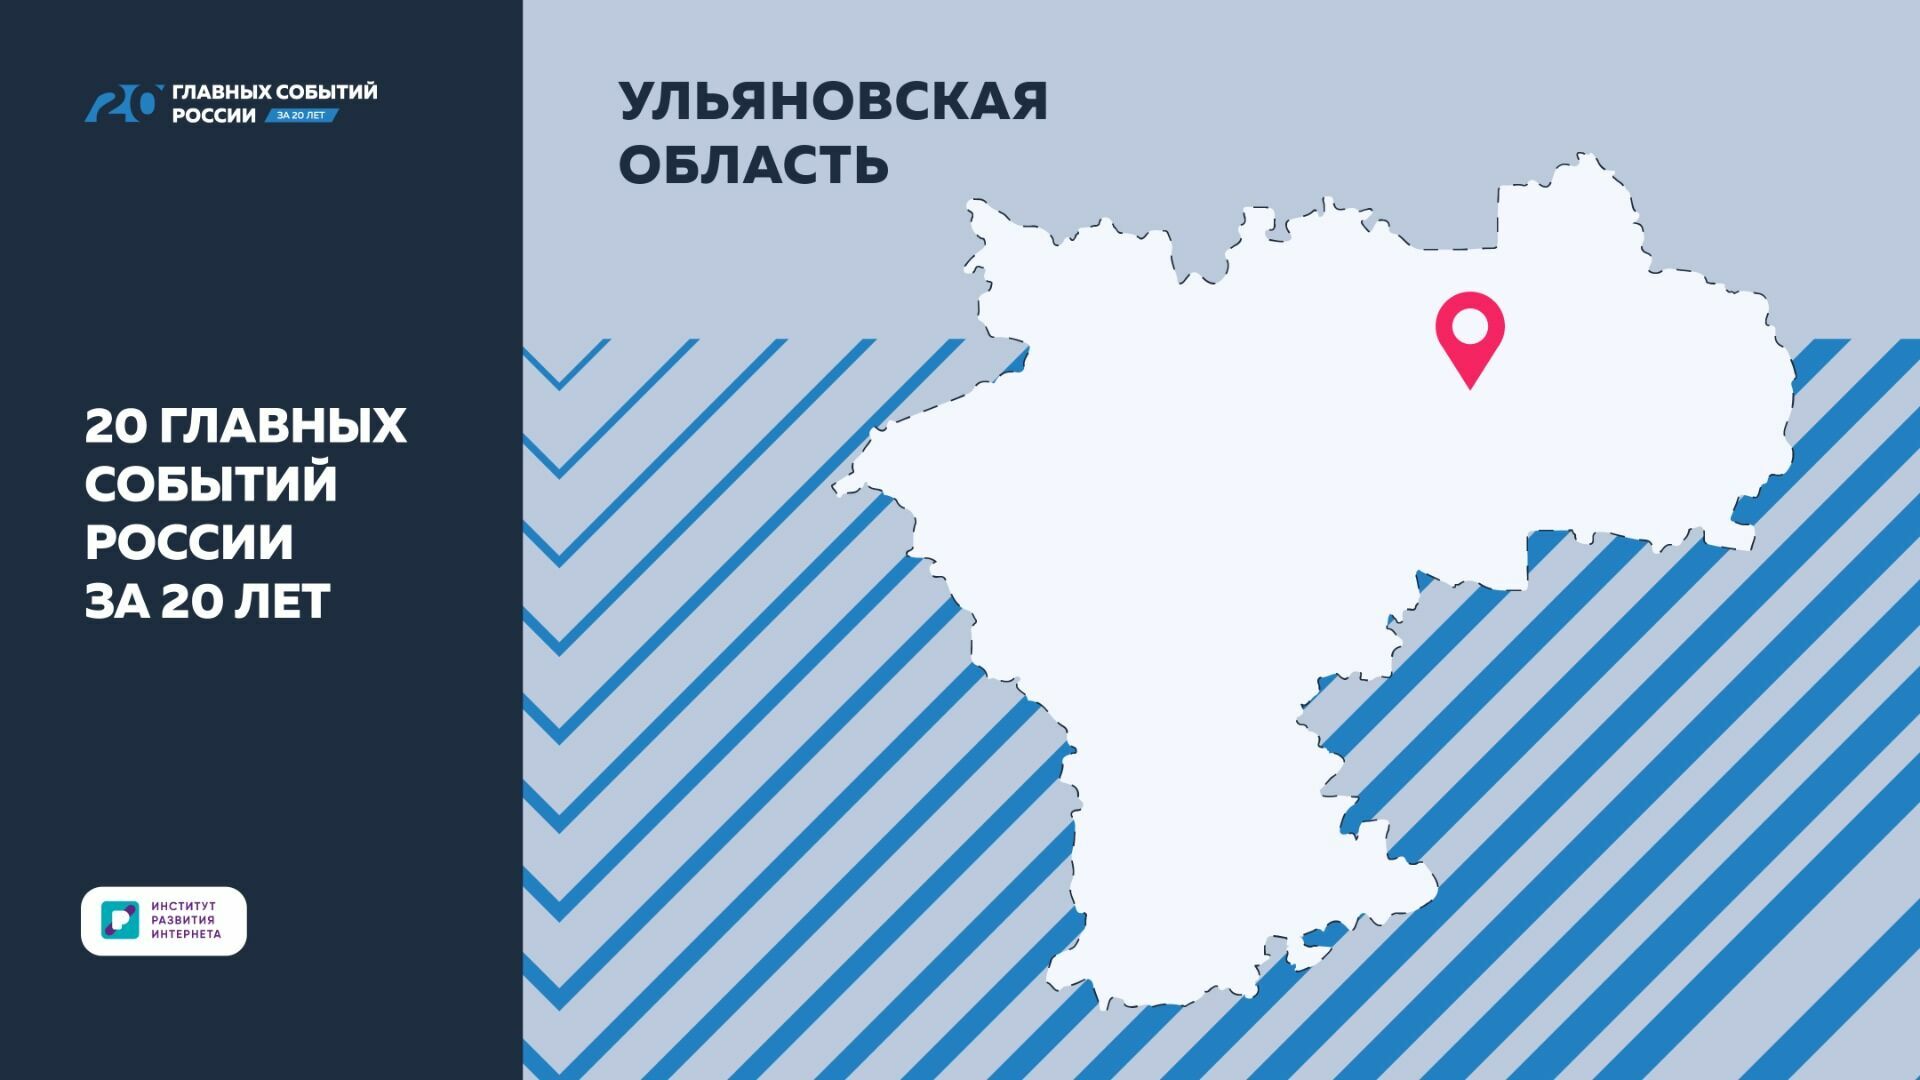 Успехи развития Ульяновской области вошли в нацпроект ИРИ